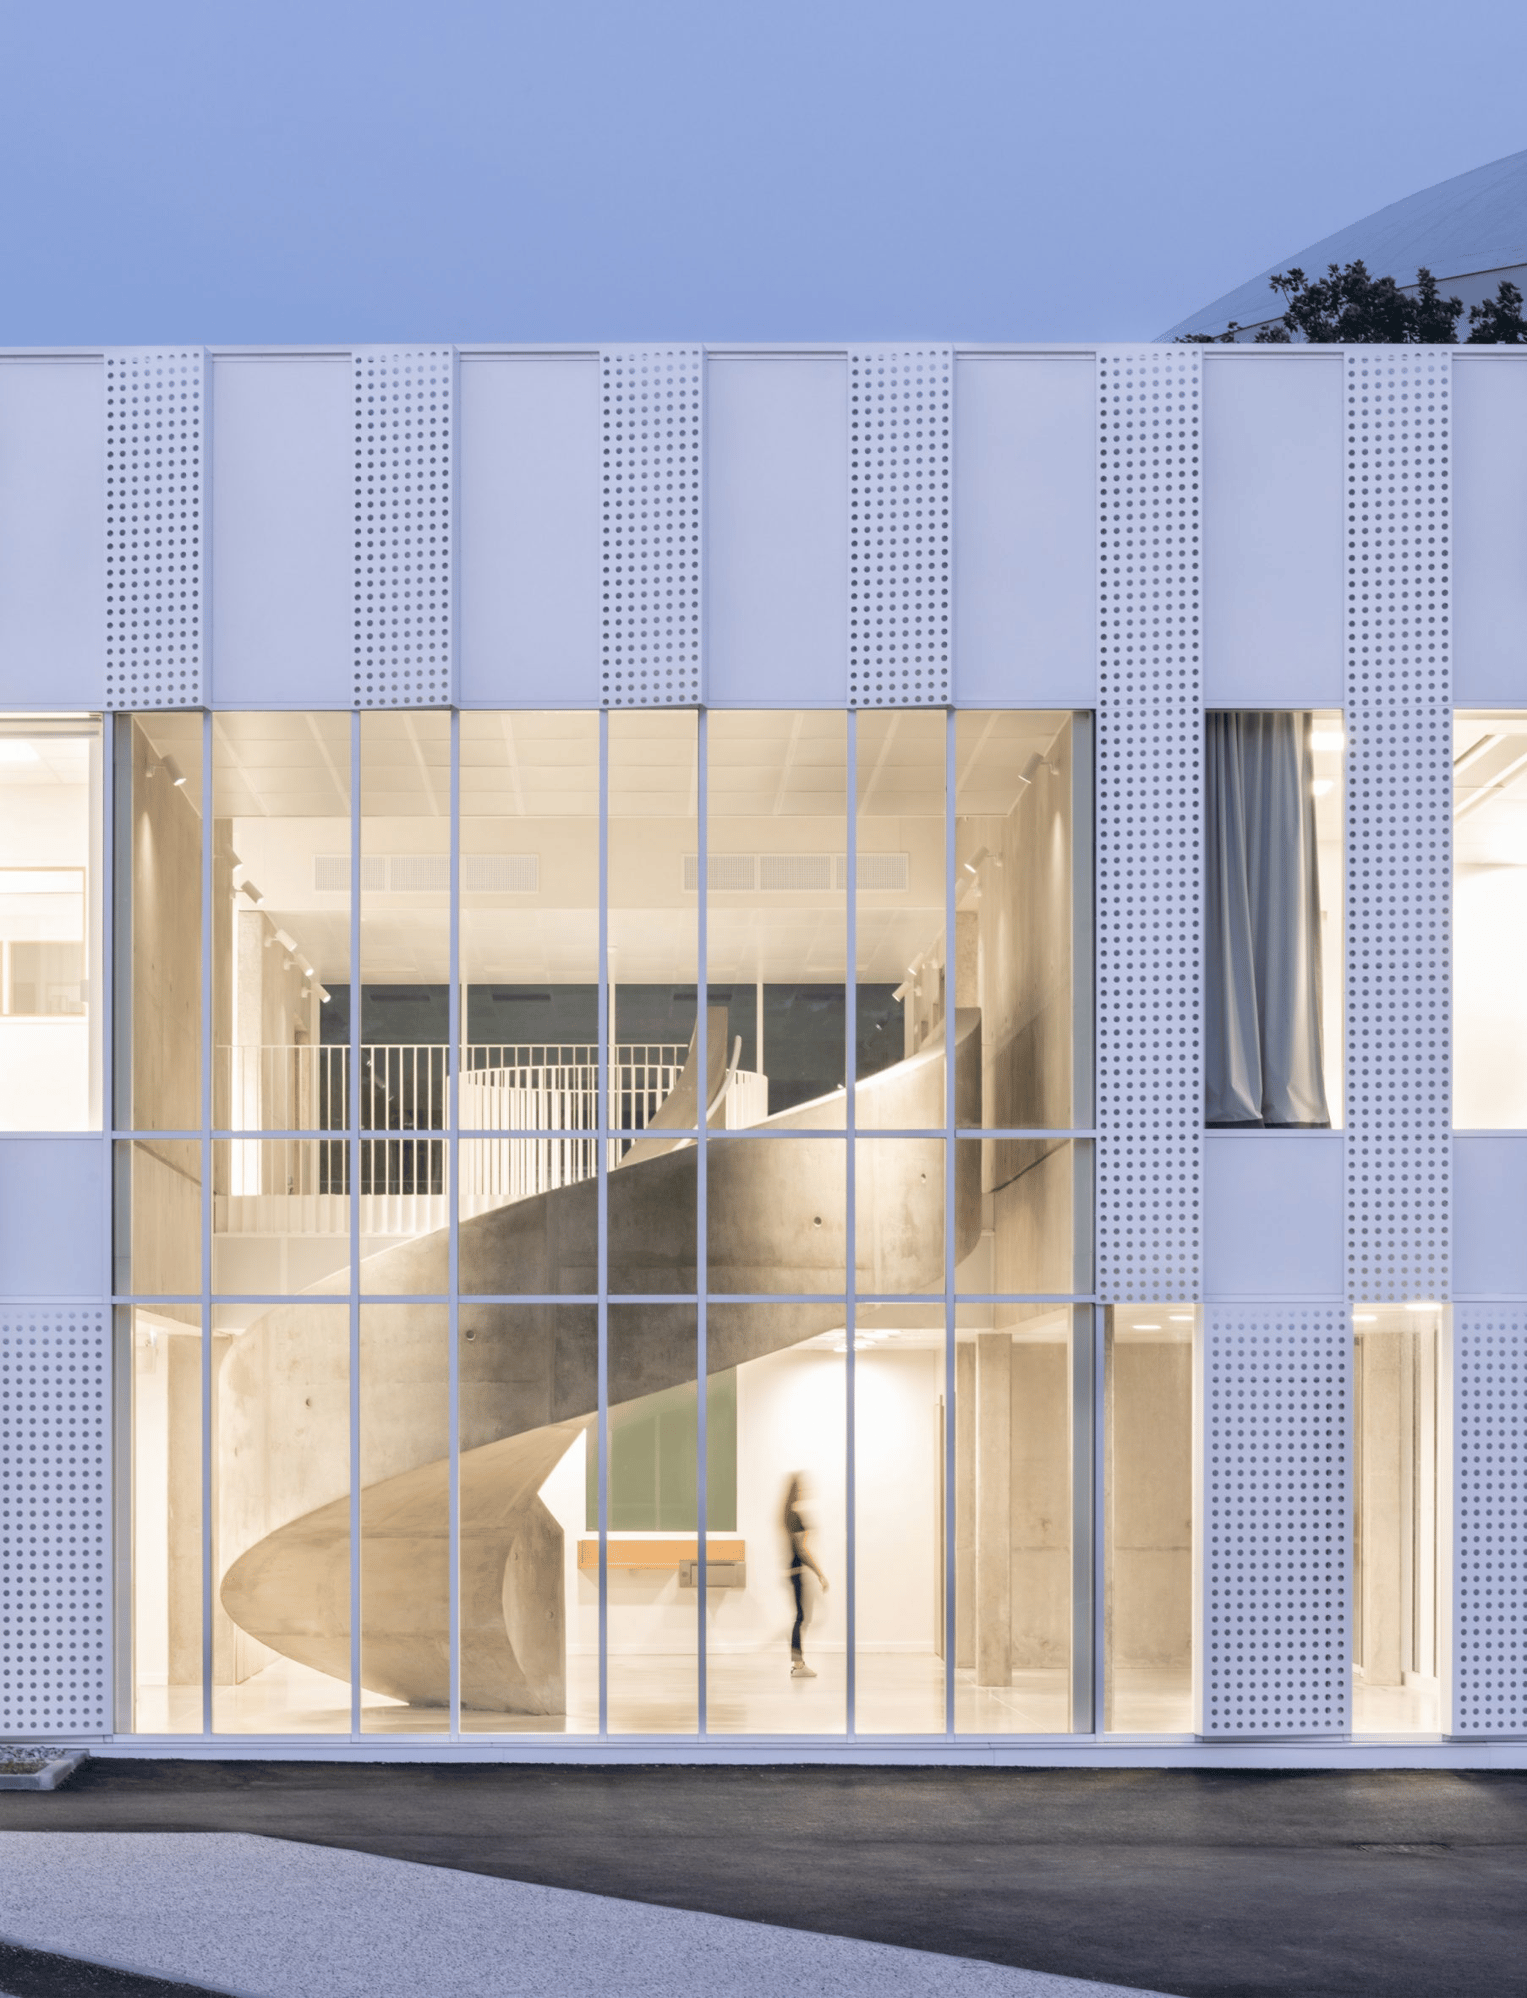 levitt-bernstein-tkmt-architects-neutron-research-centre-france-architecture_dezeen_2364_col_1-scaled